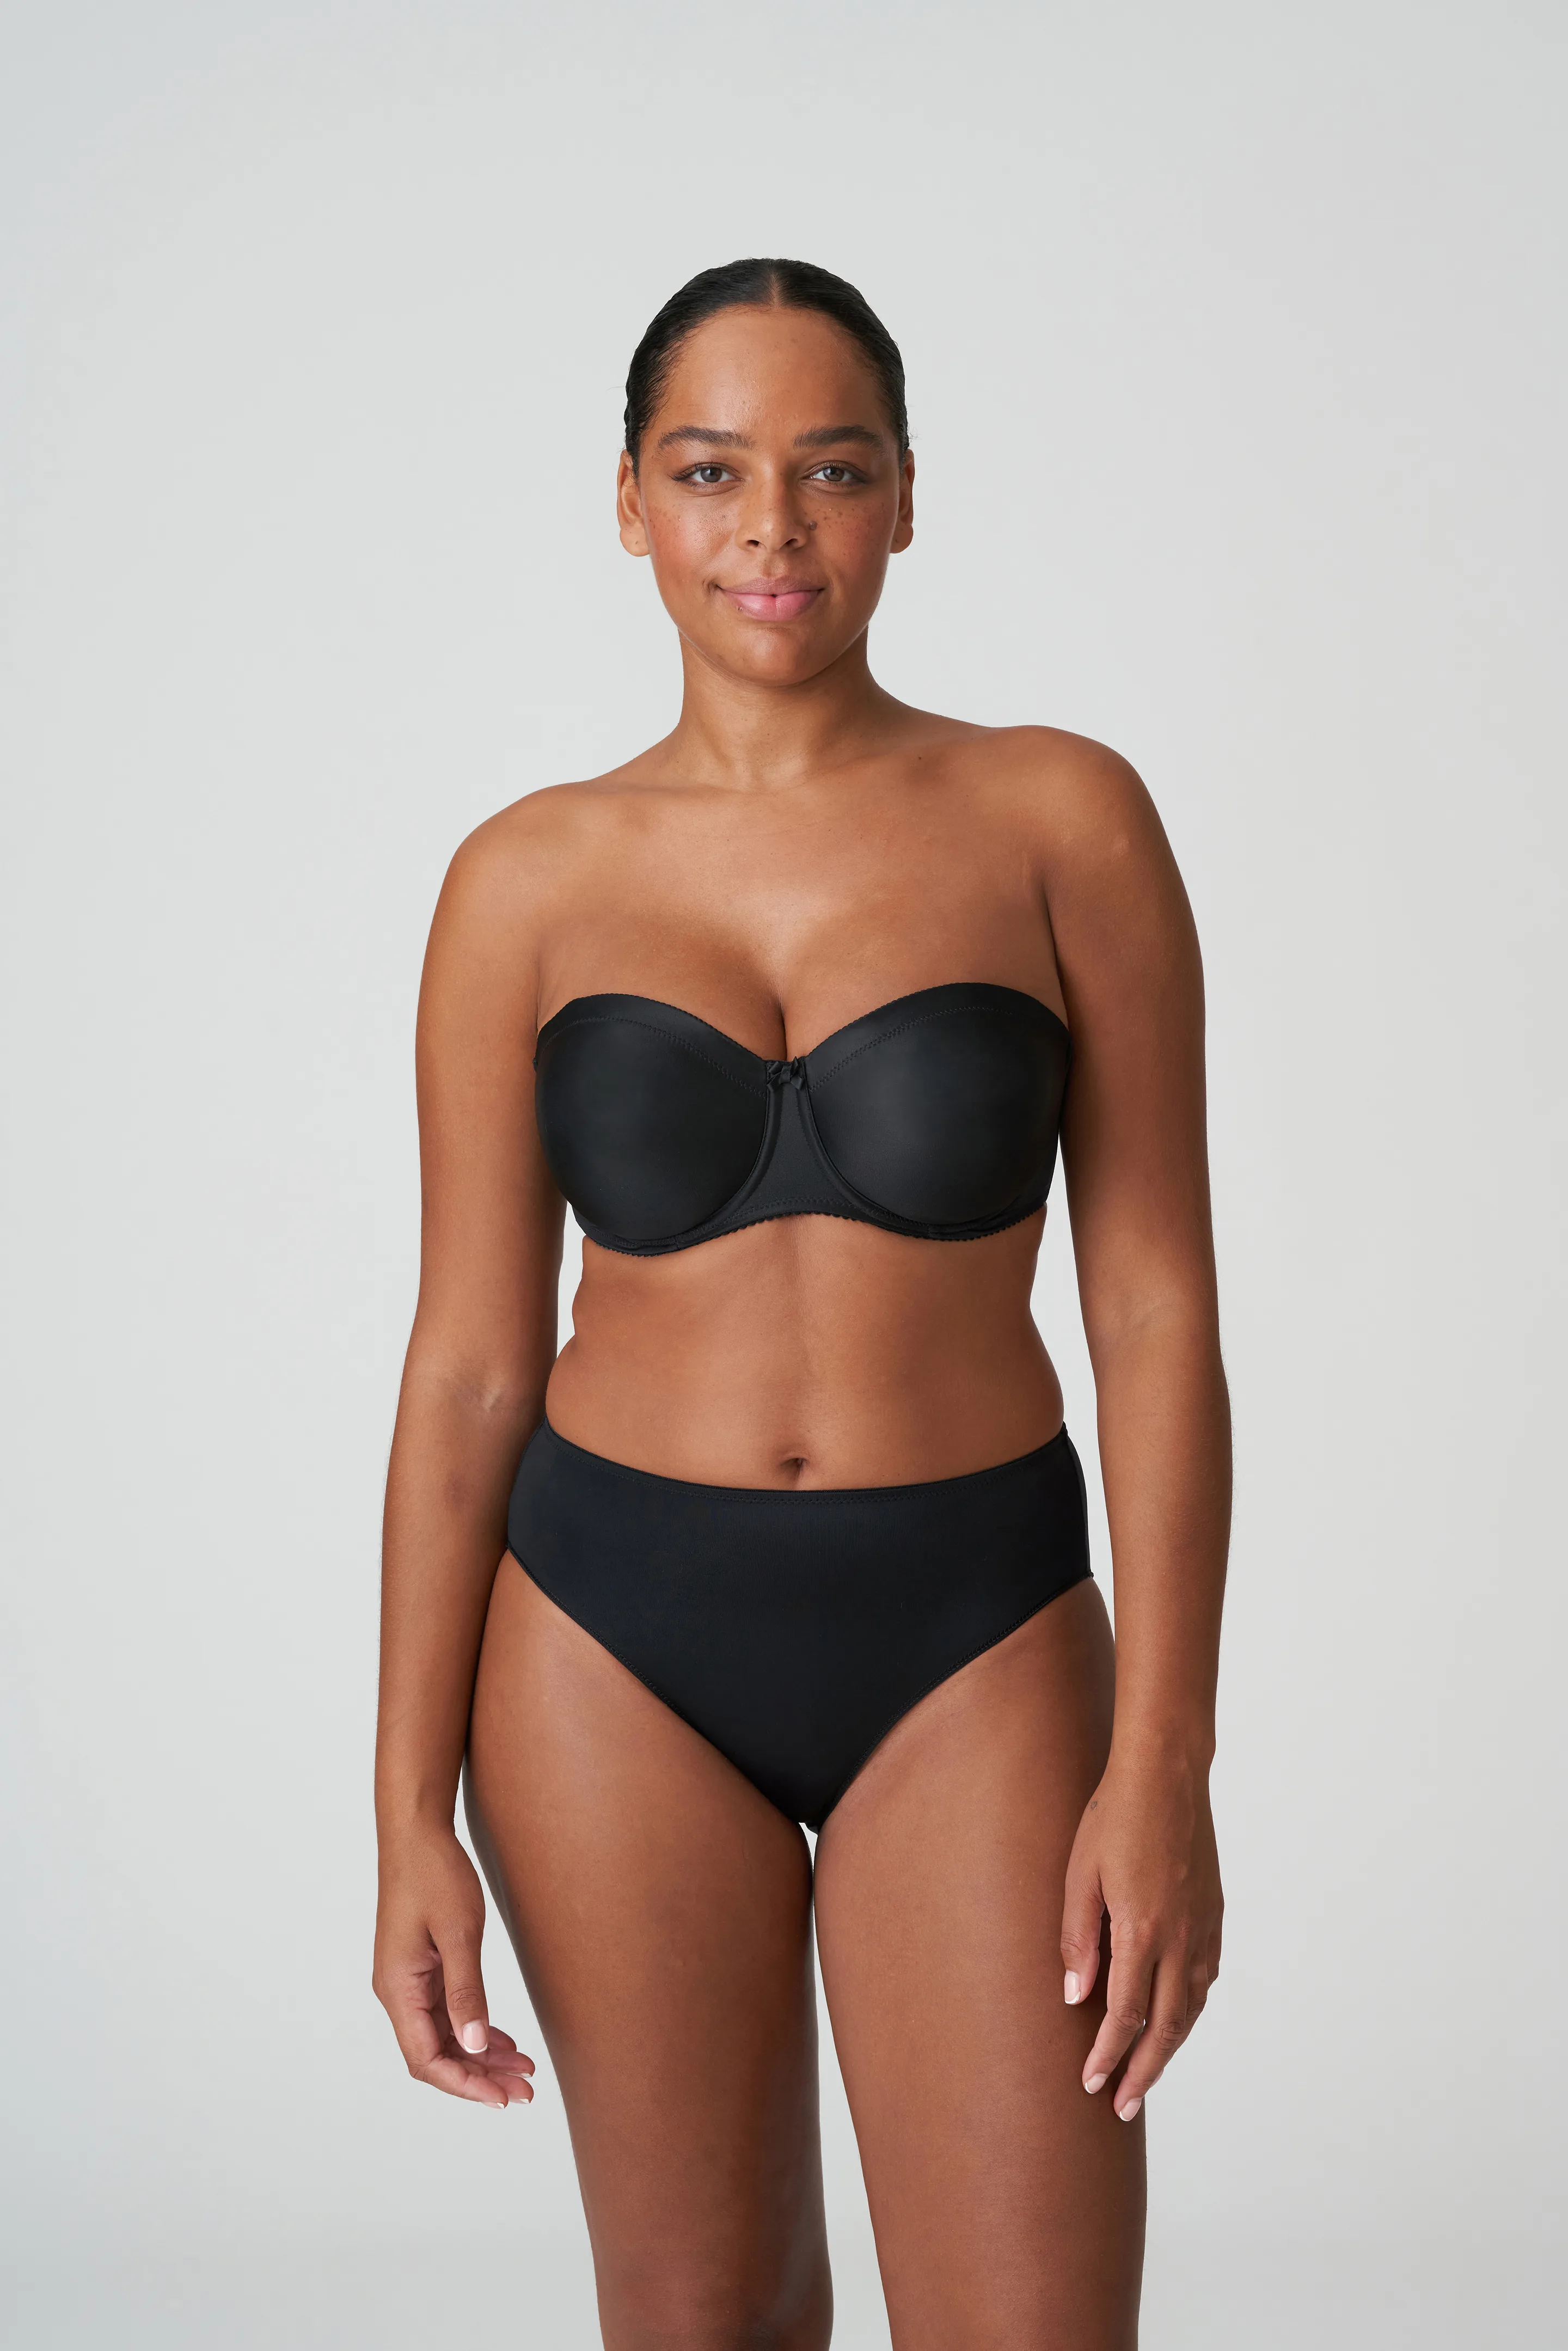 La Senza Lingerie size 32 B strapless lightly padded bra black Velvet